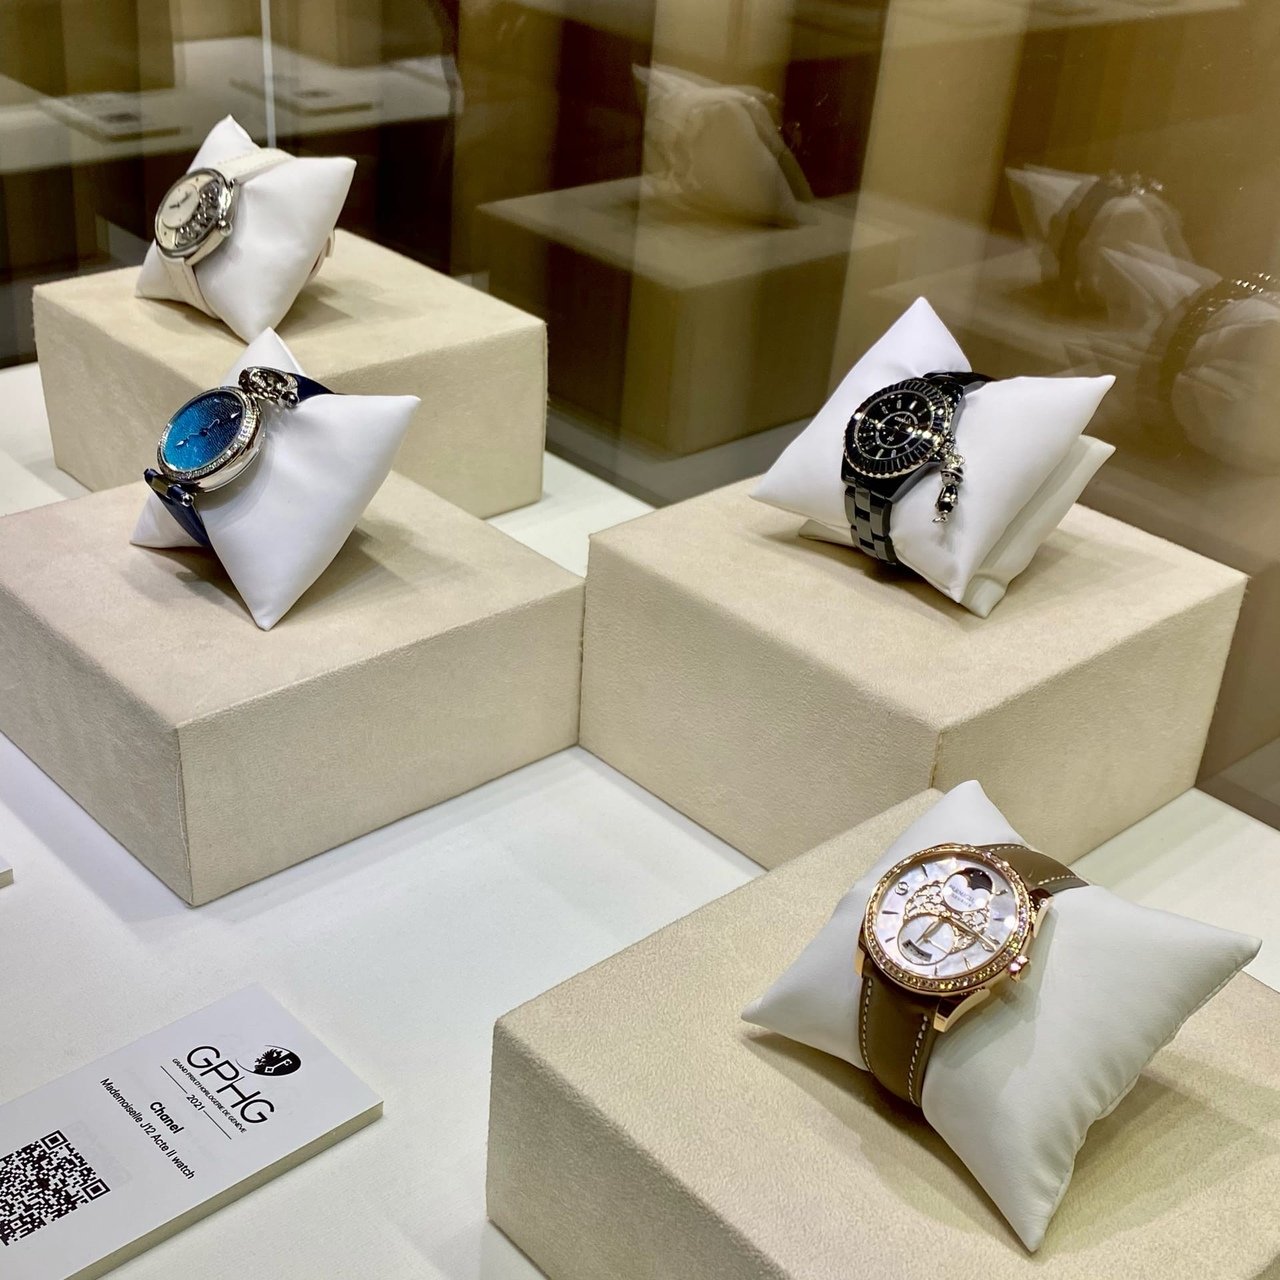 Выставка лучших наручных часов мира в музее Фаберже